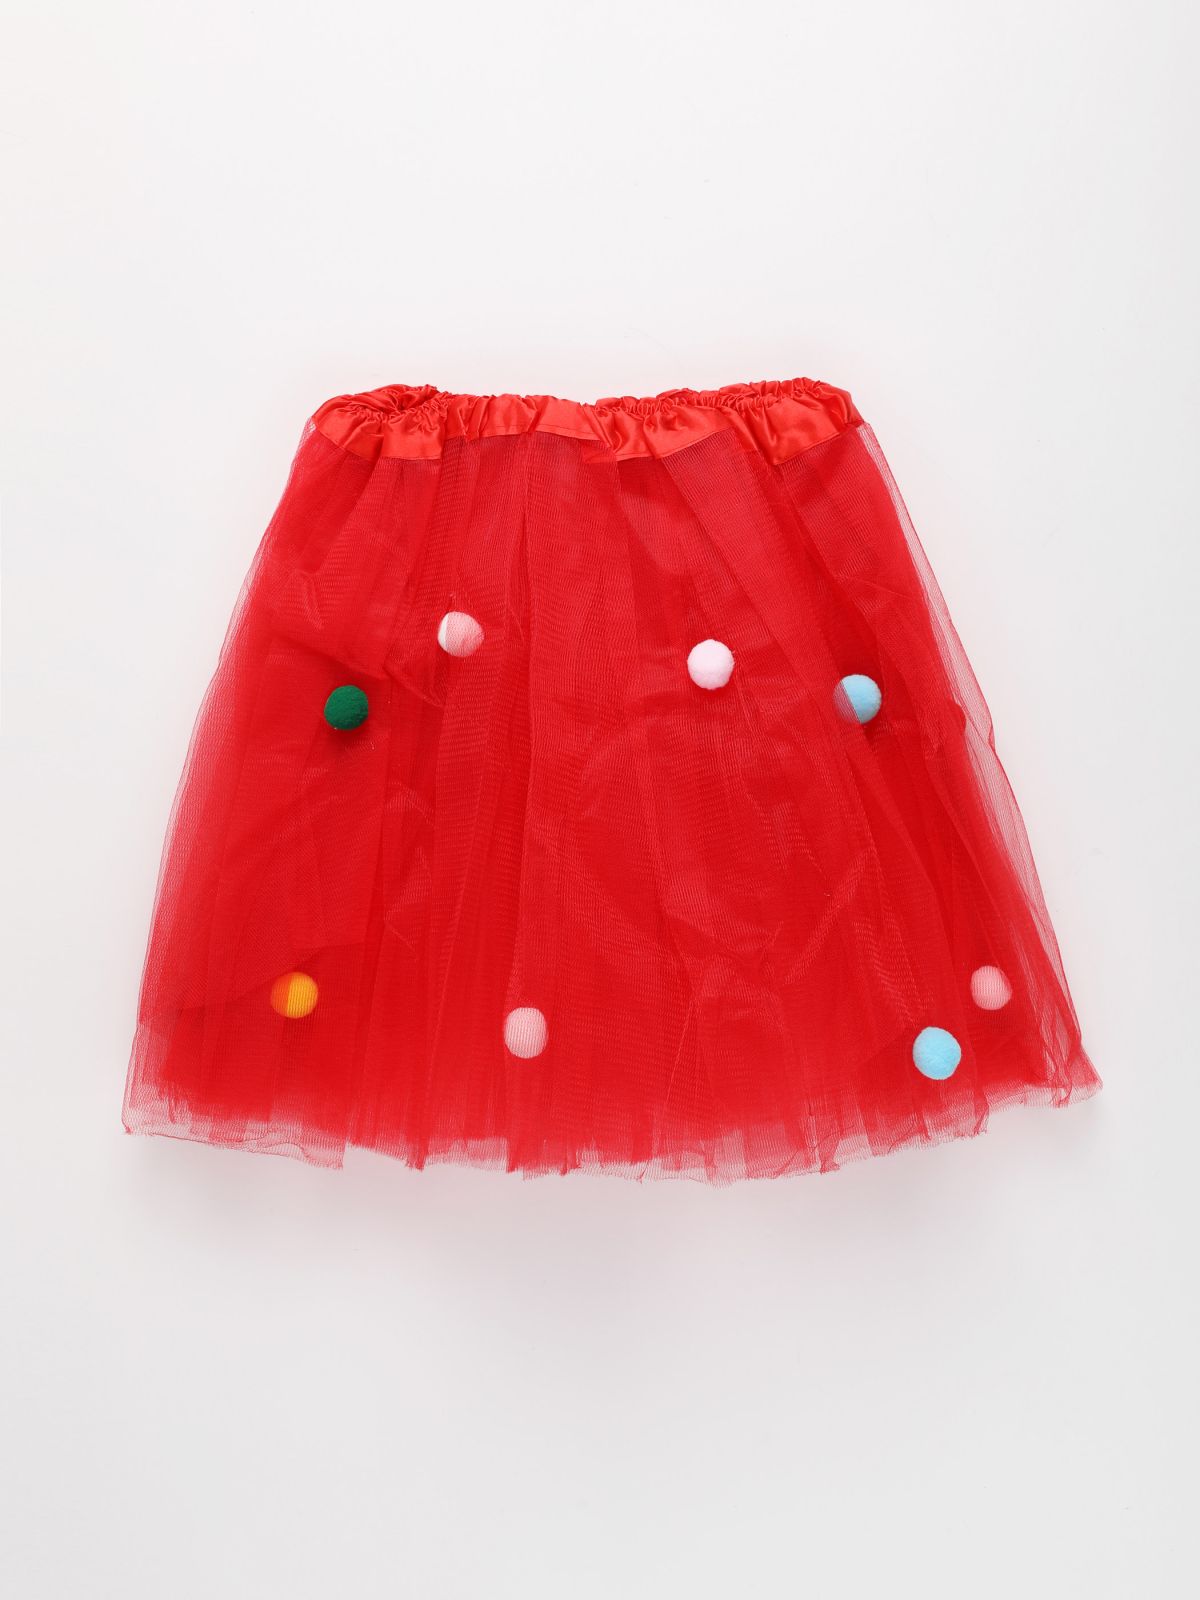  סט קשת וחצאית יוניקורן / Purim Collection של SHOSHI ZOHAR